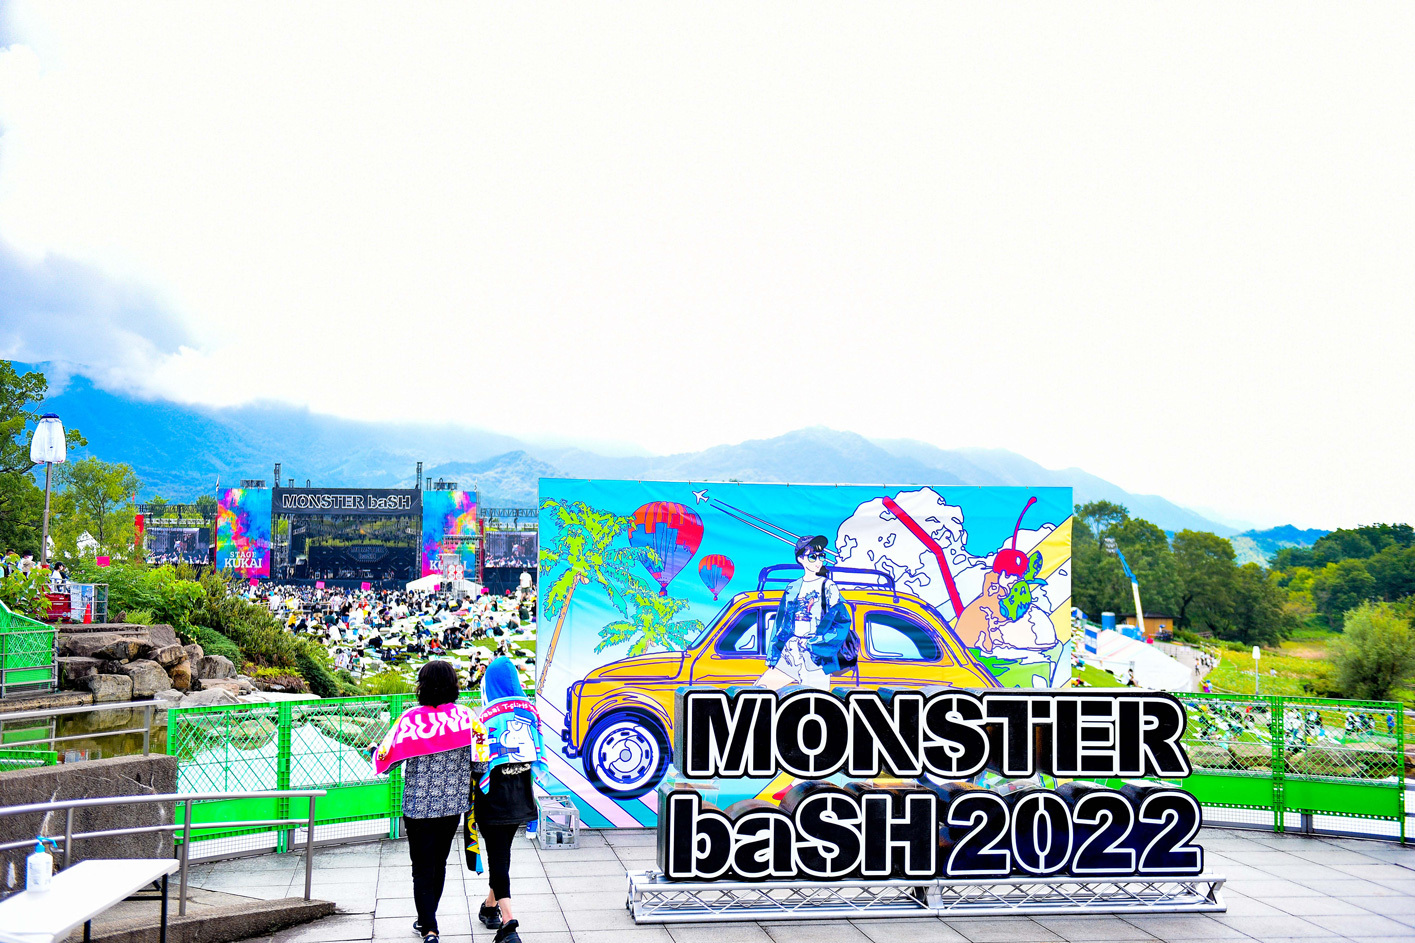 『MONSTER baSH 2022』